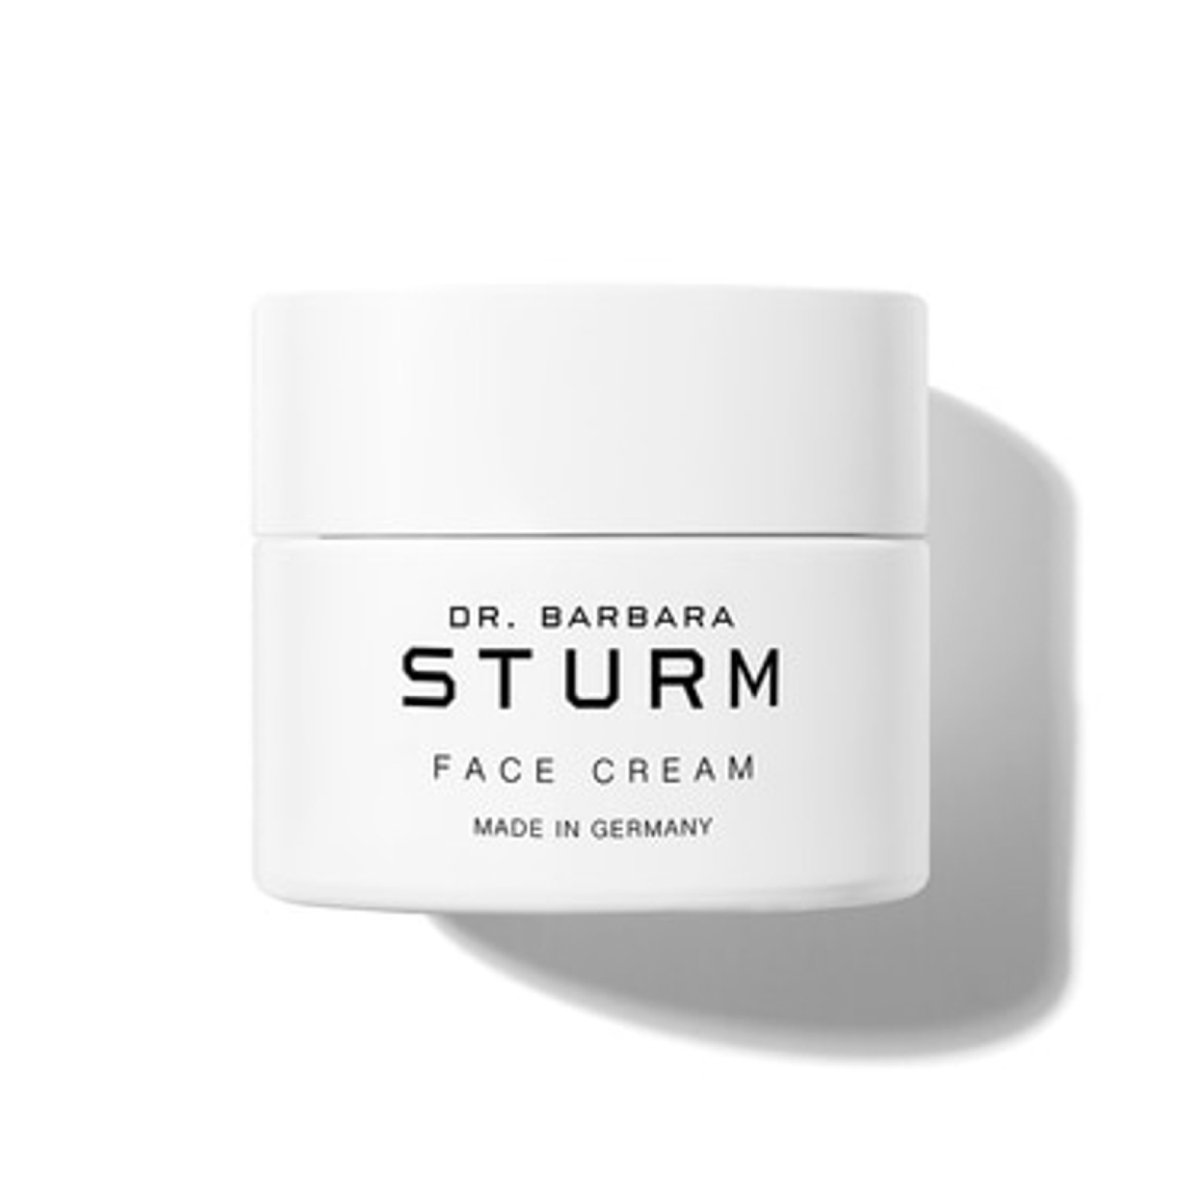 Dr. Barbara Sturm Face Cream - SkincareEssentials